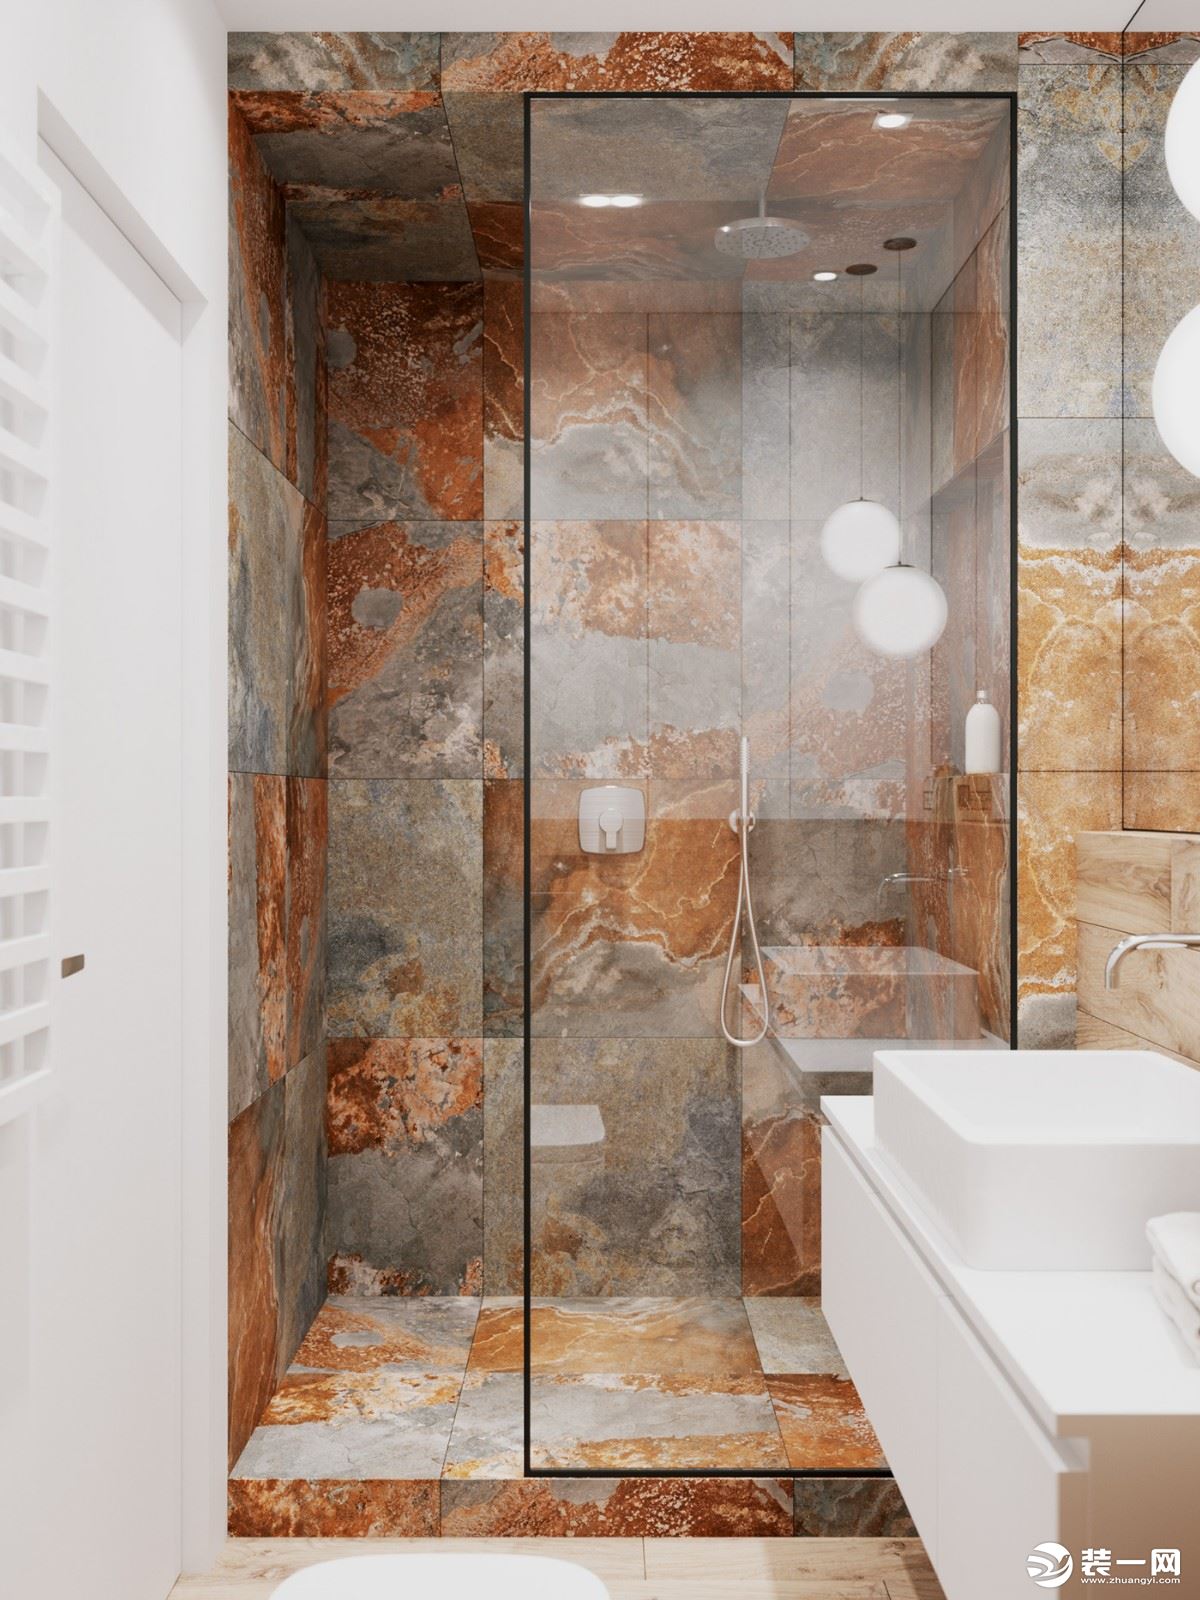 大理石材在淋浴房中的巧用-装修经验-装修大本营-19楼家居